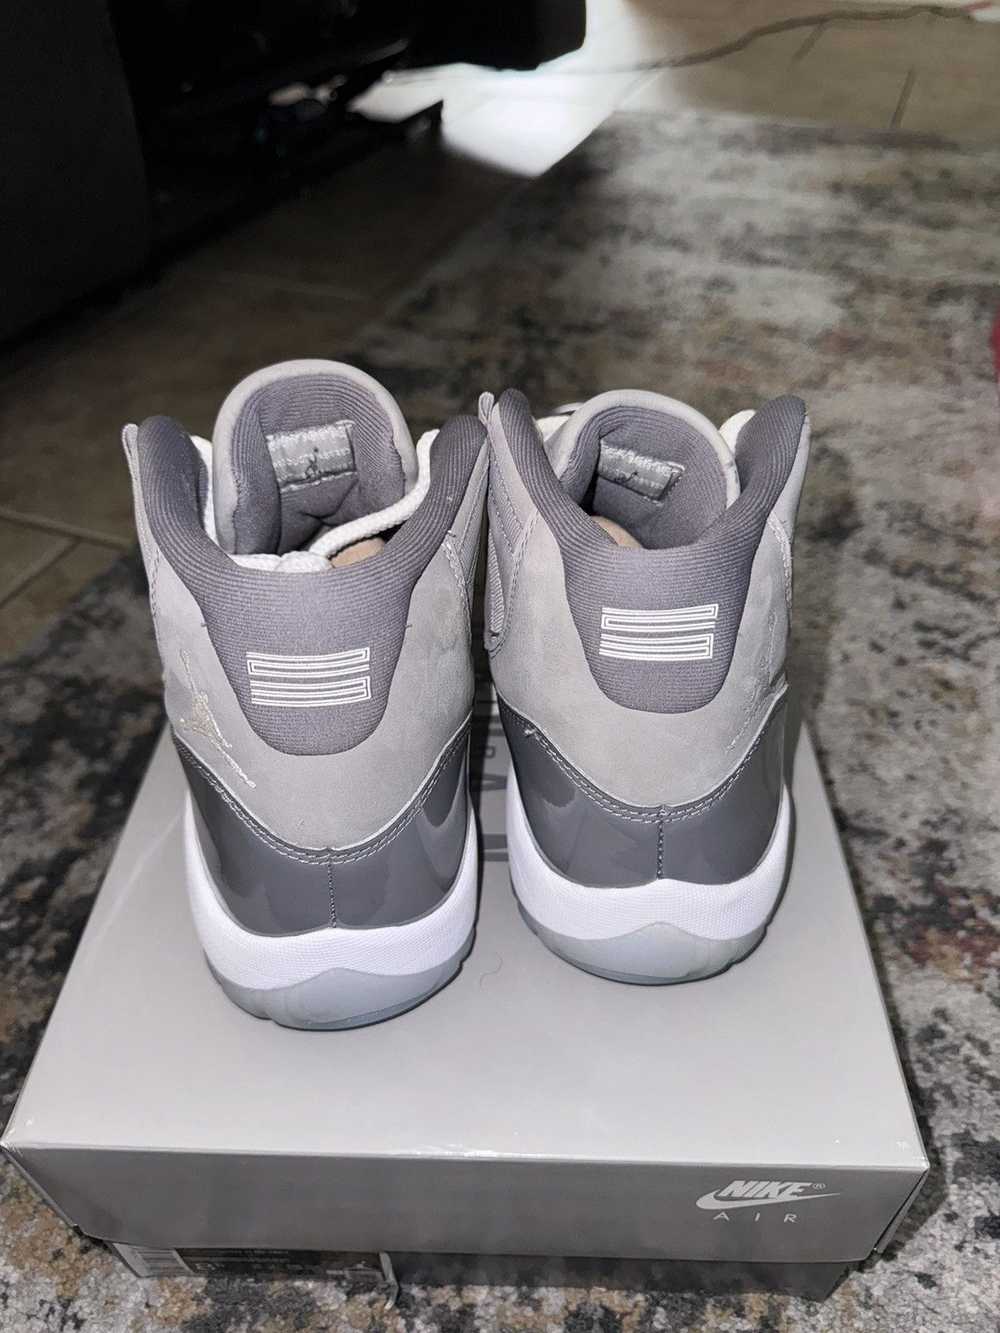 Jordan Brand × Nike Jordan 11 Retro Cool Grey - image 4